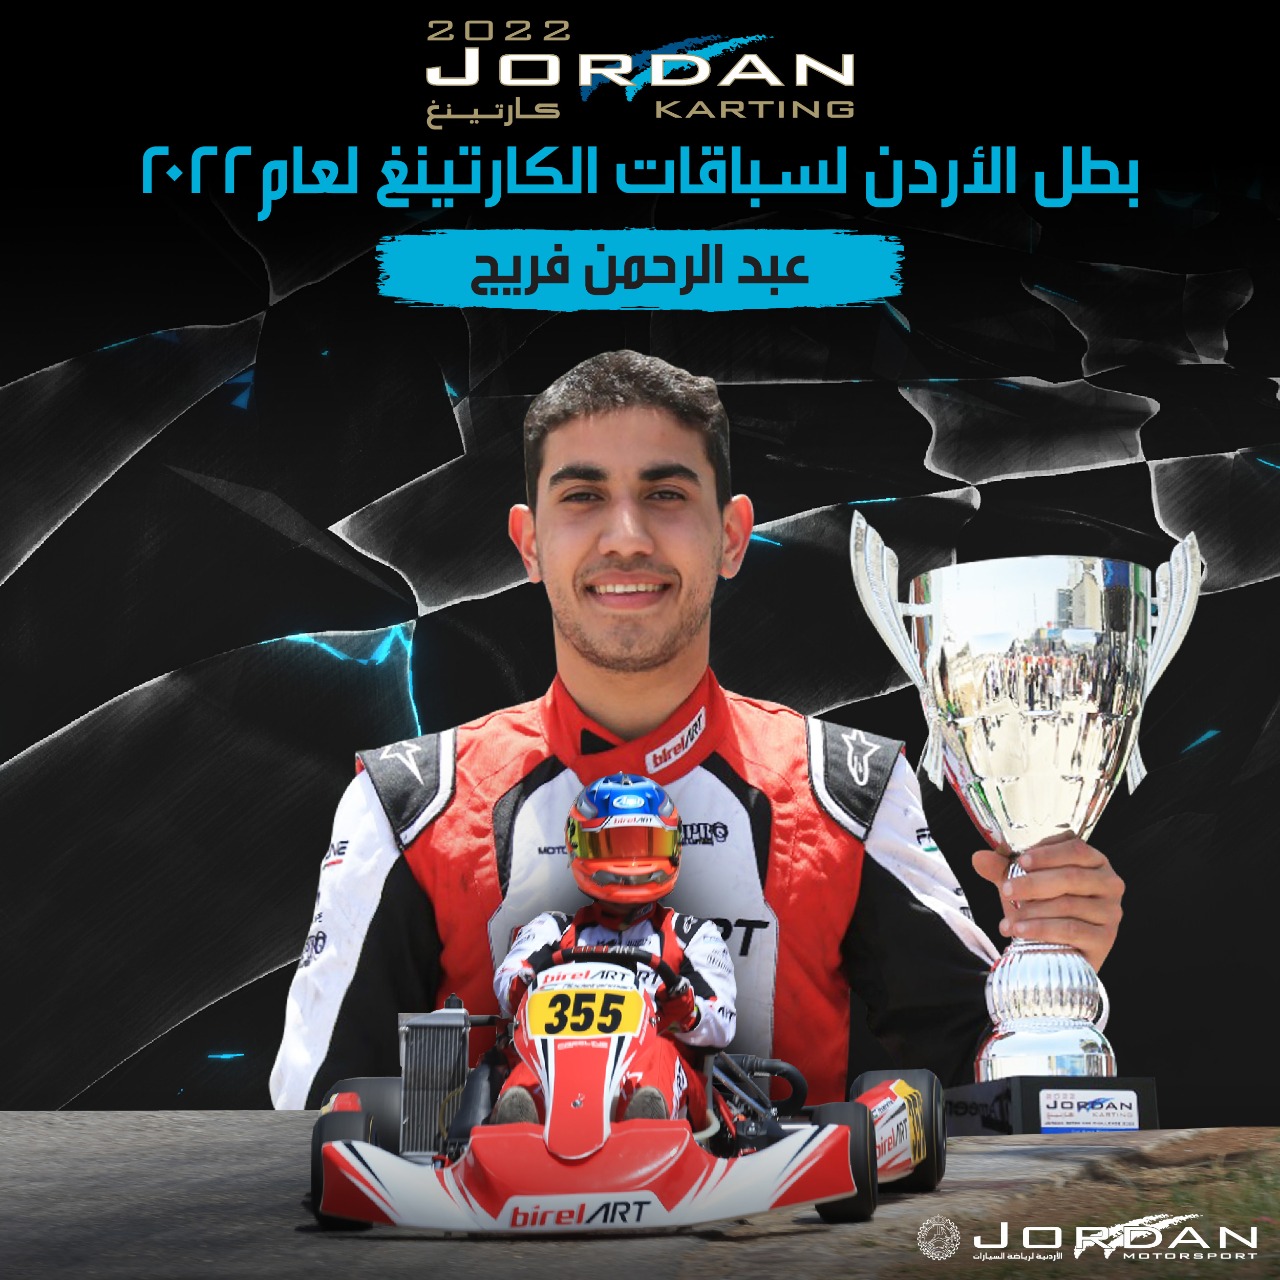 الأردنية لرياضة السيارات تصدر الترتيب العام لبطولة الأردن للكارتينغ 2022